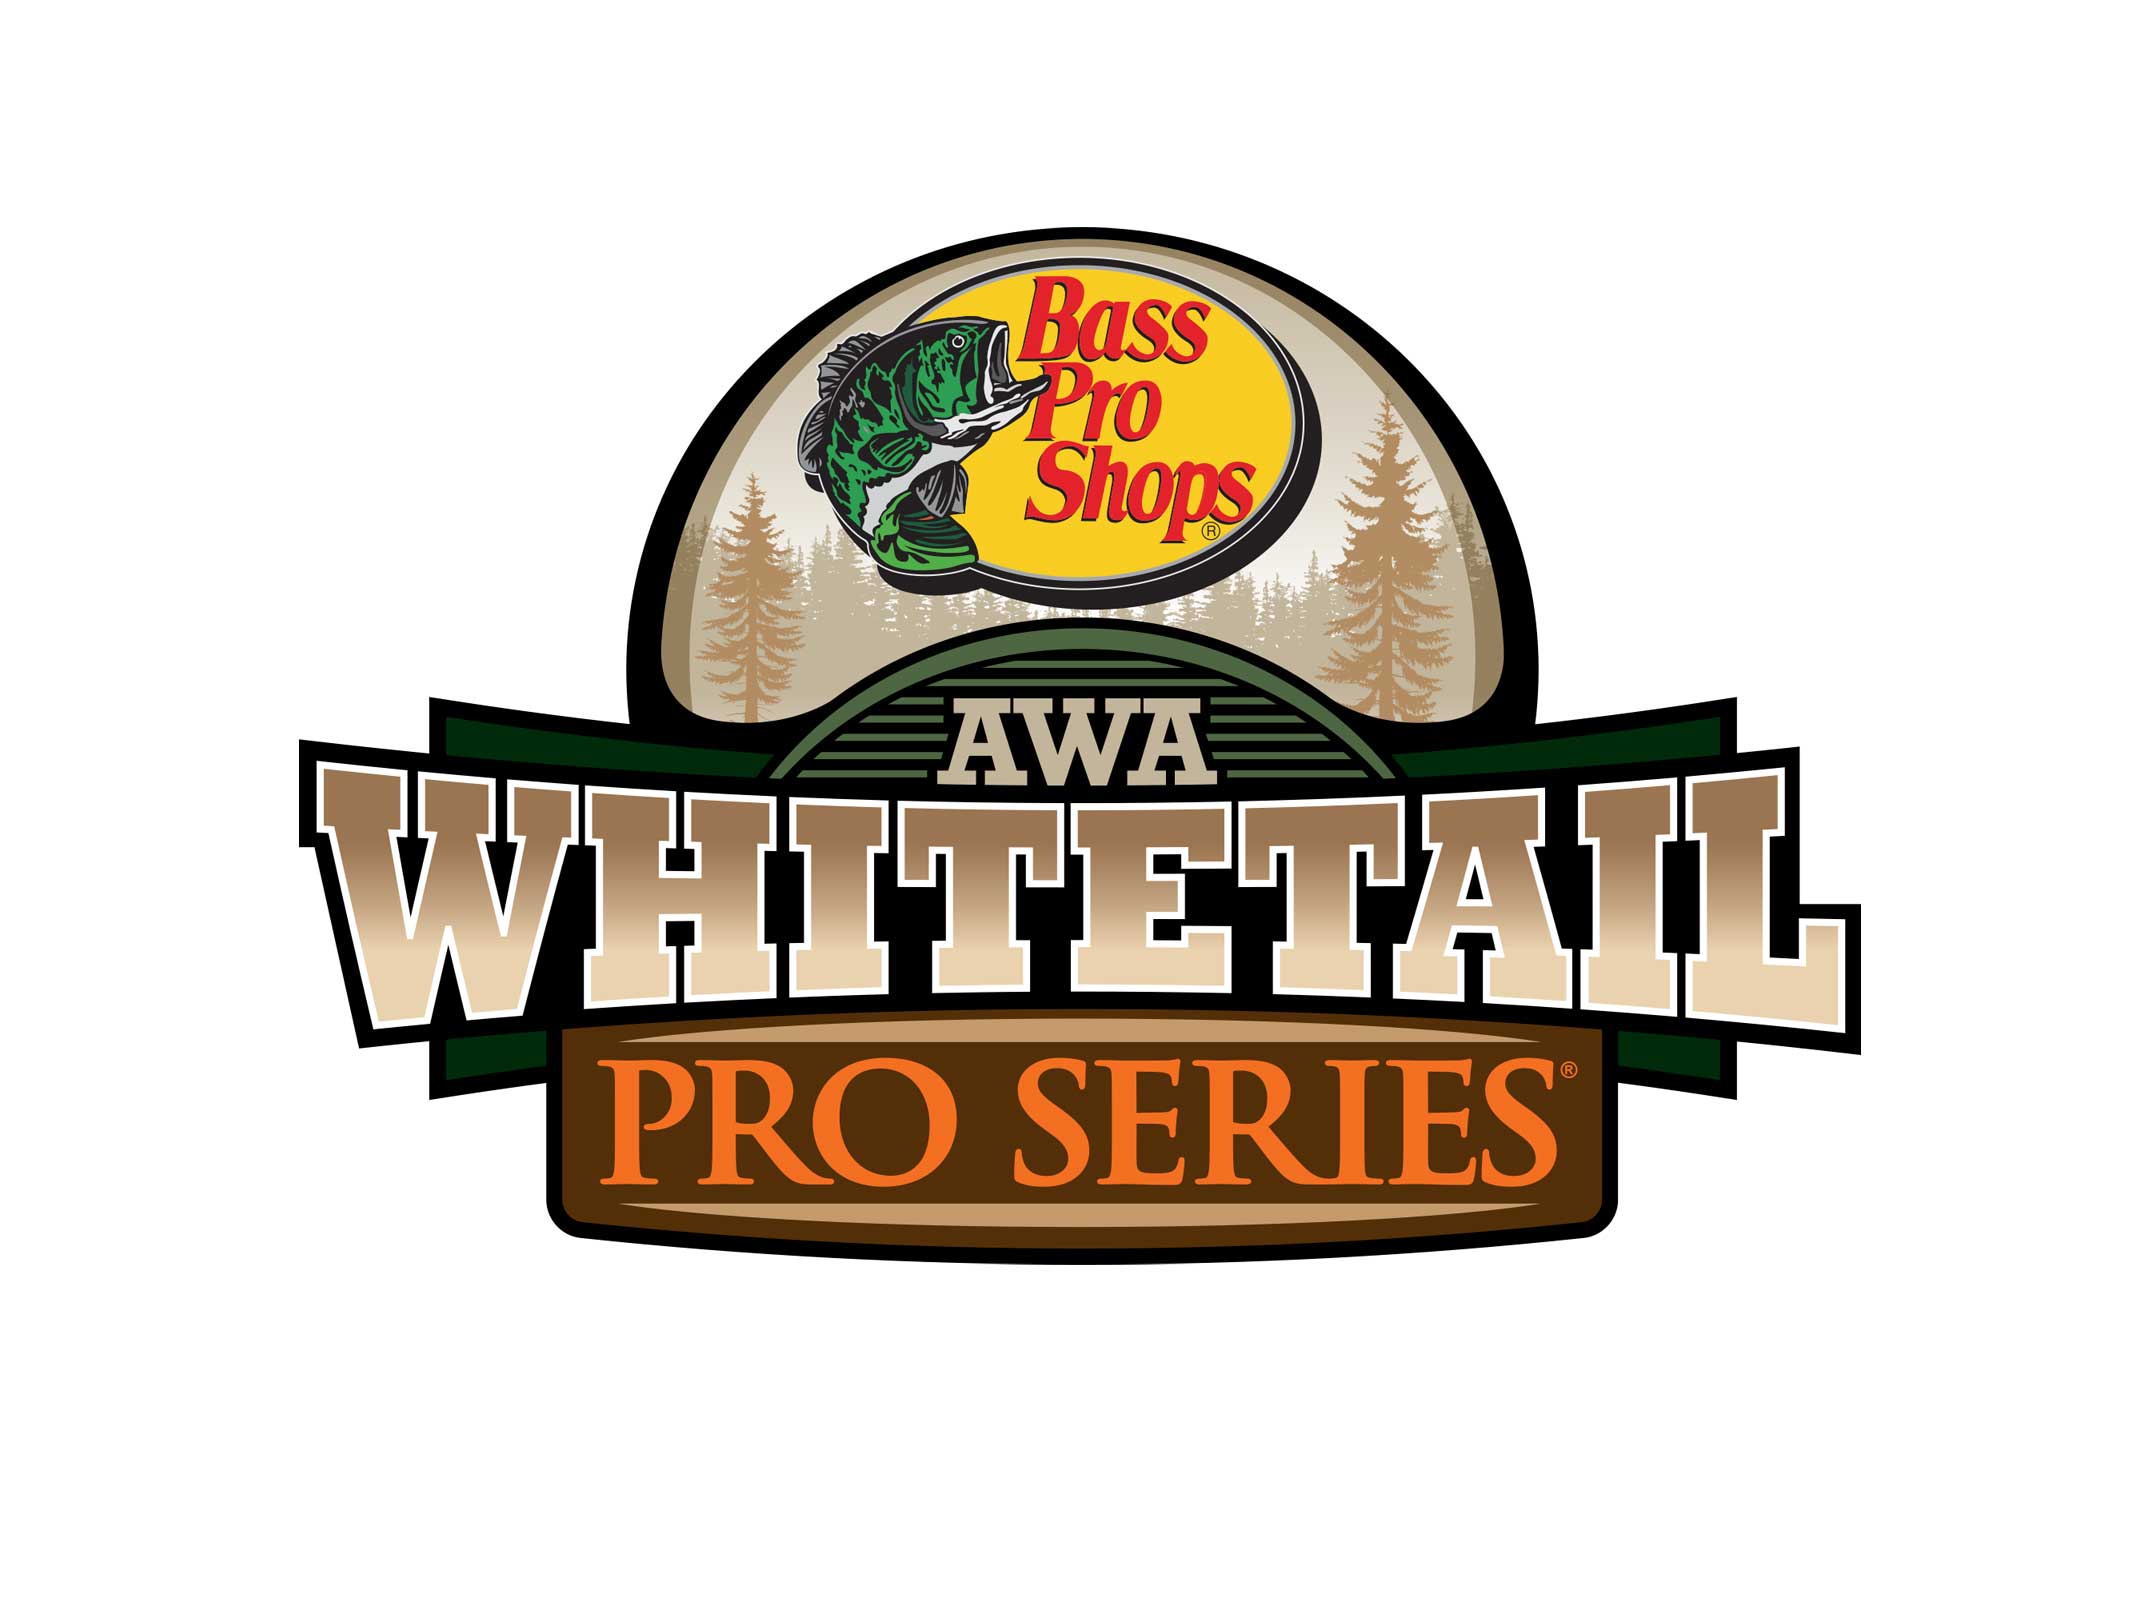 Bass Pro AWA Whitetail Pro Series - Herolight